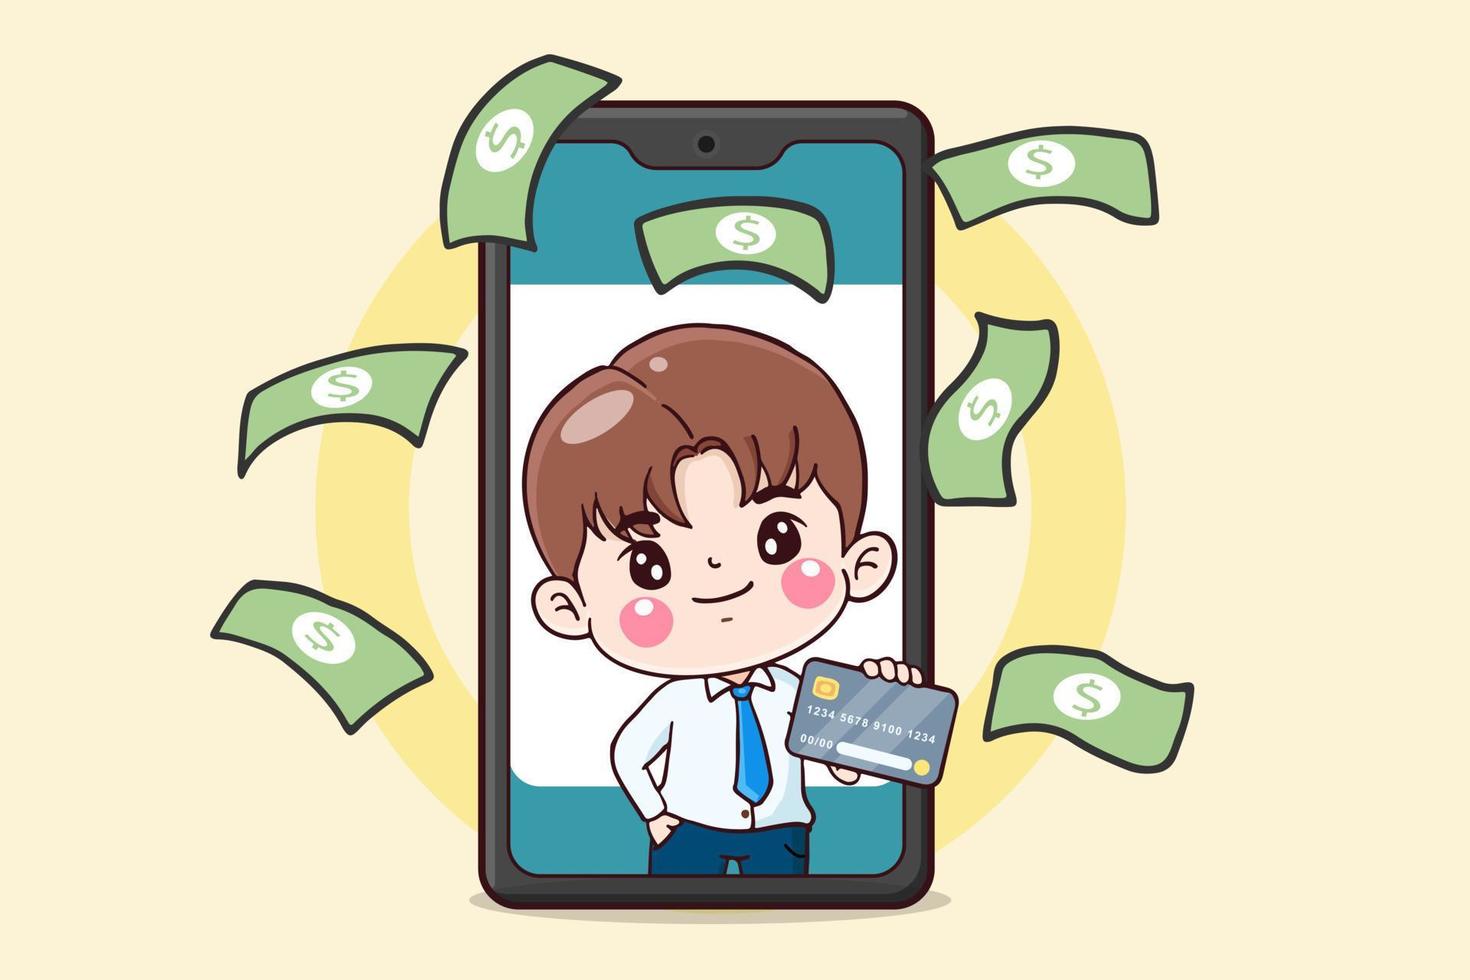 homme d'affaires de personnage de dessin animé détenant une carte de crédit sur téléphone mobile, concept financier, illustration plate vecteur